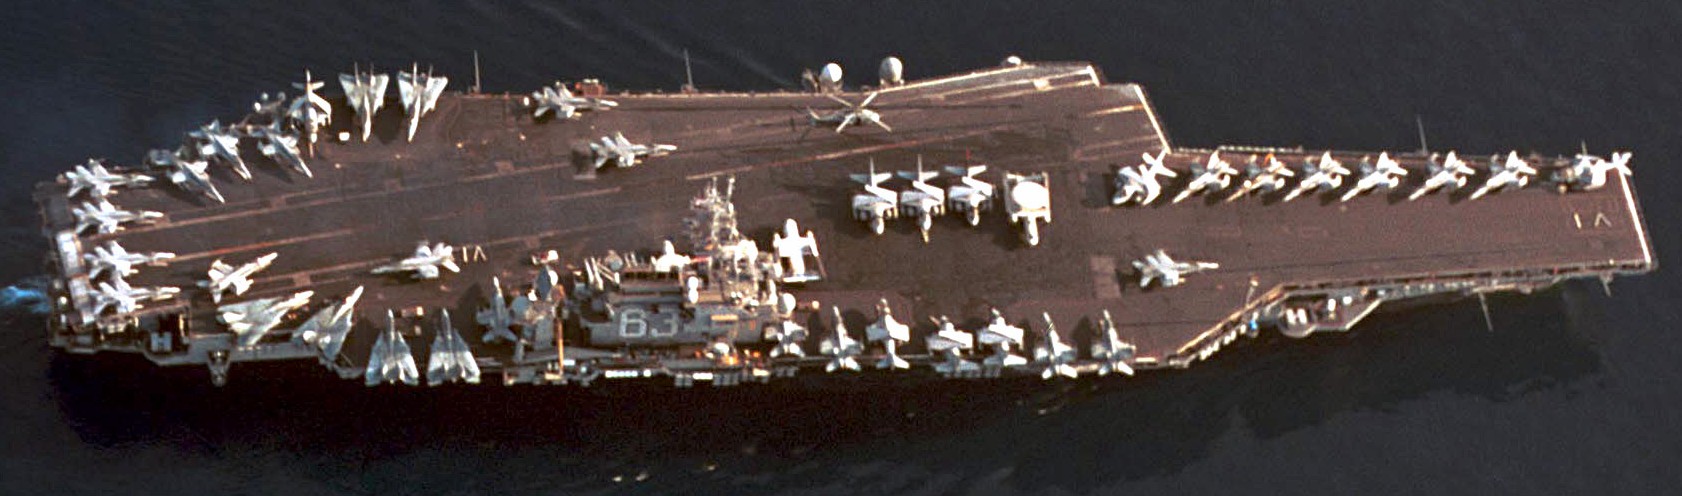 cv-63 uss kitty hawk aircraft carrier air wing cvw-5 us navy 257